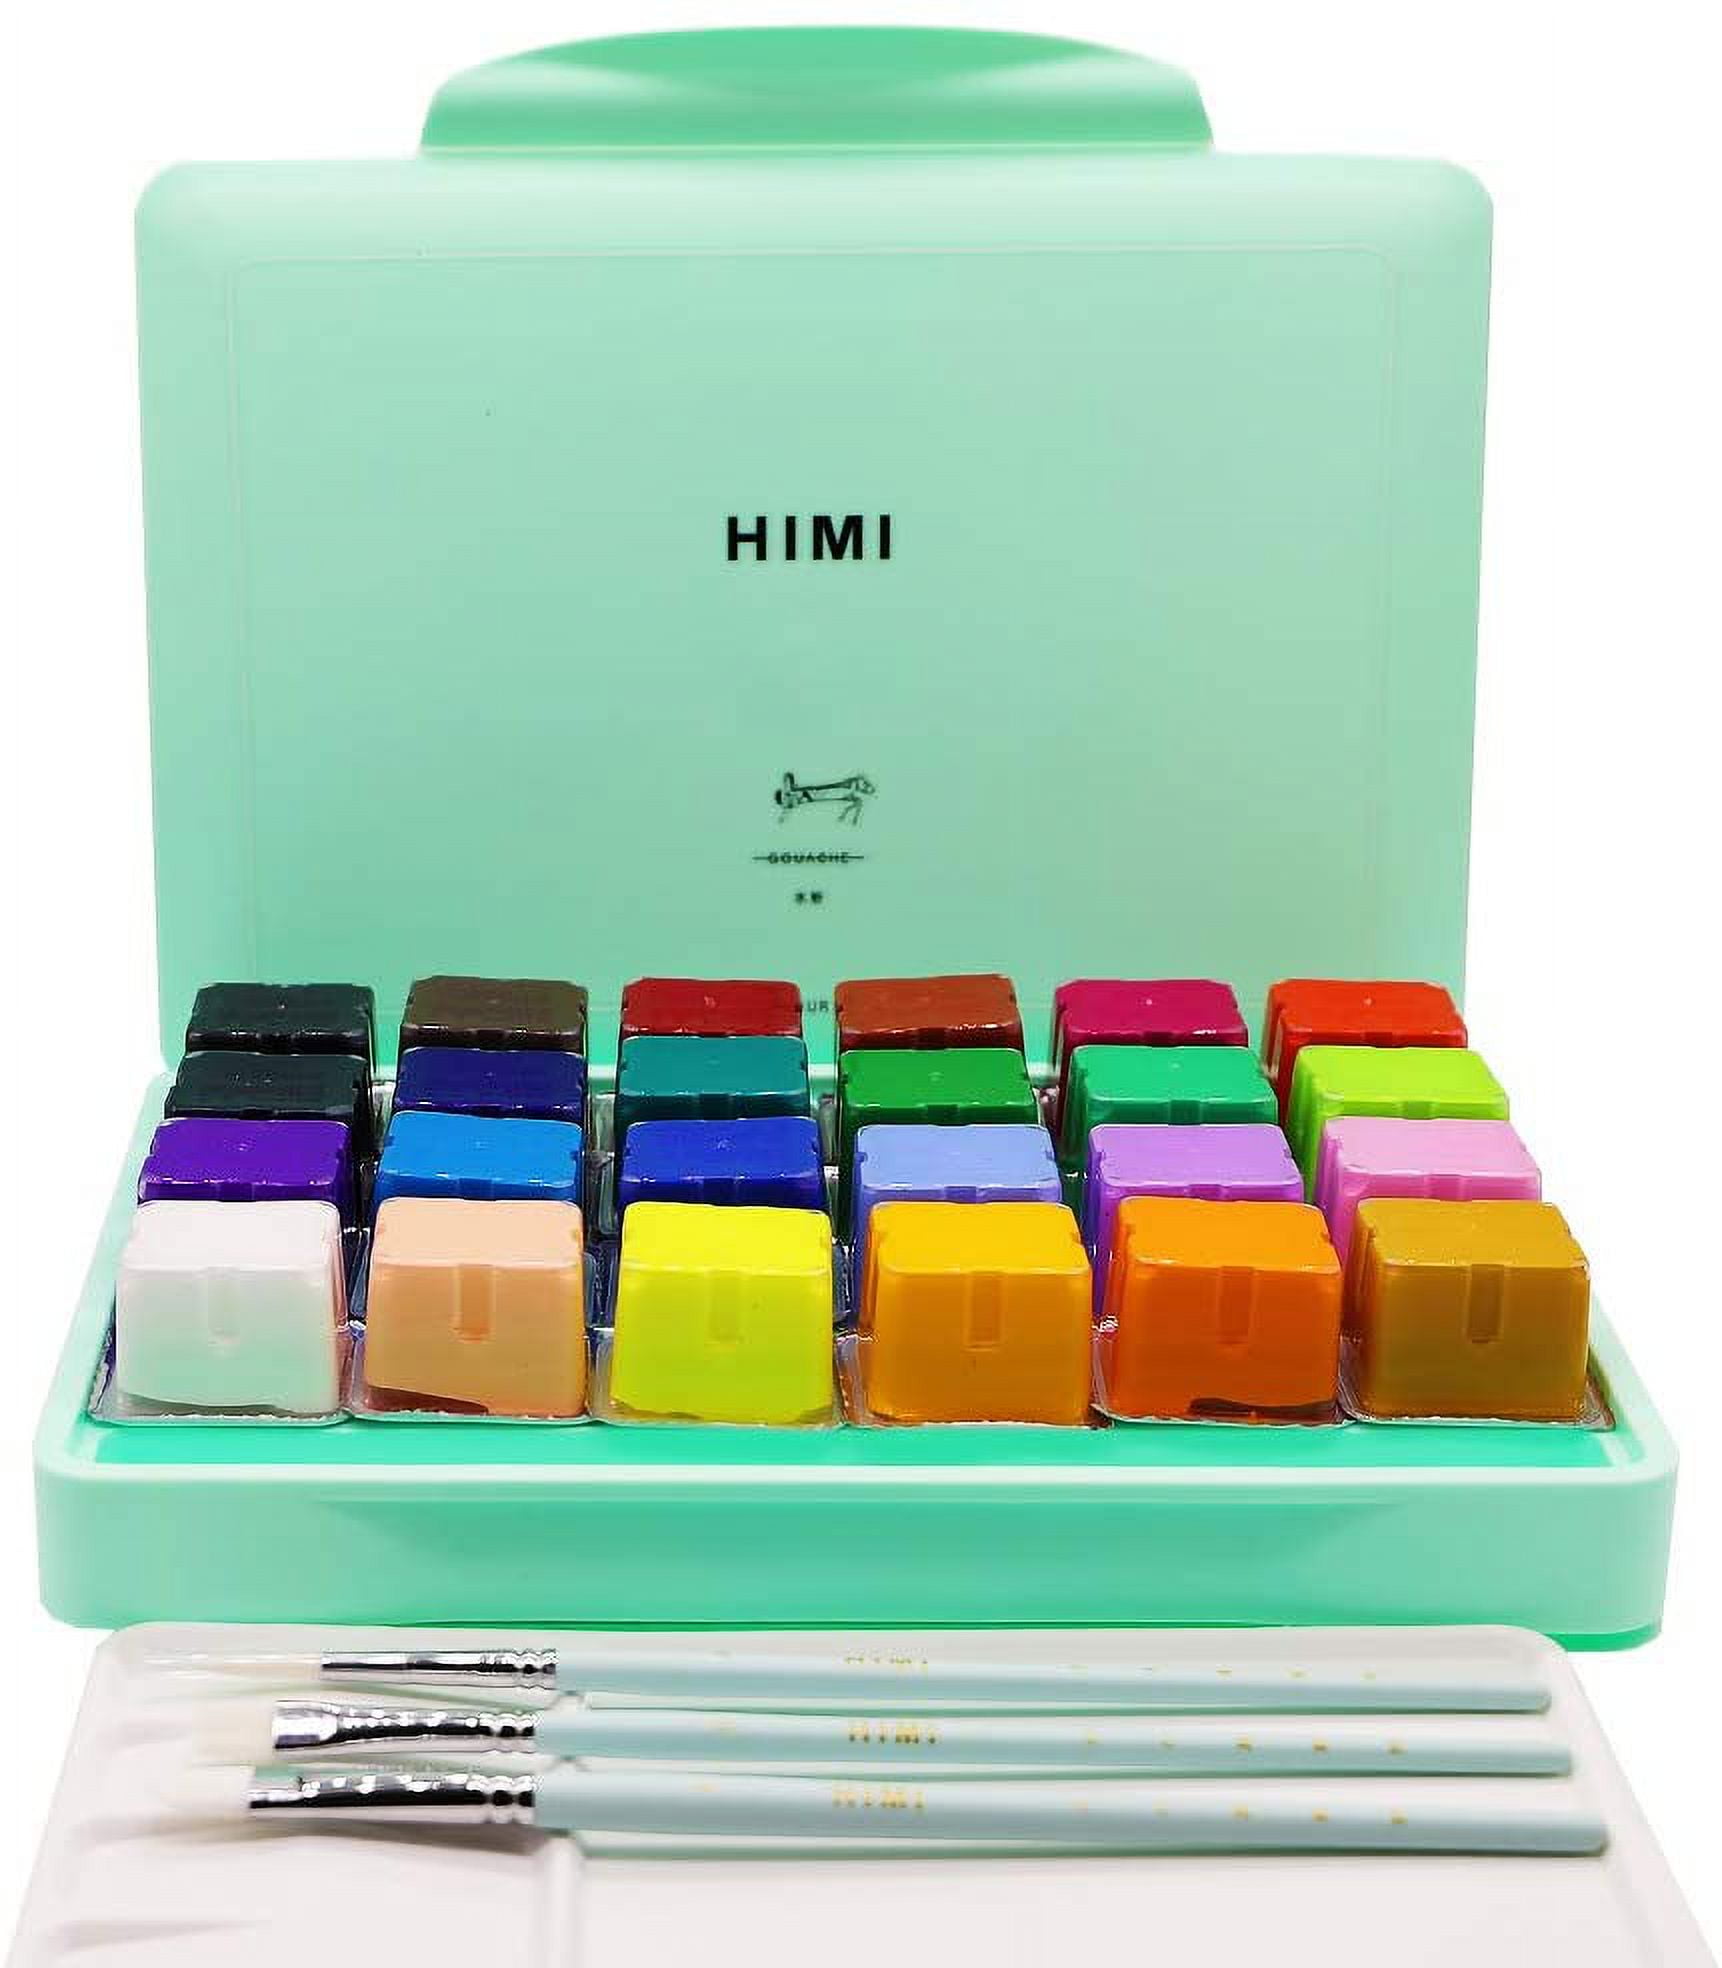 Himi Gouache Paint, 24 Color Paints Set, Jelly Gouache Opaque, Vivid, Smooth Gel Watercolor Paint Kit with Portable Case, 3pcs Brushes, Palette, Easy